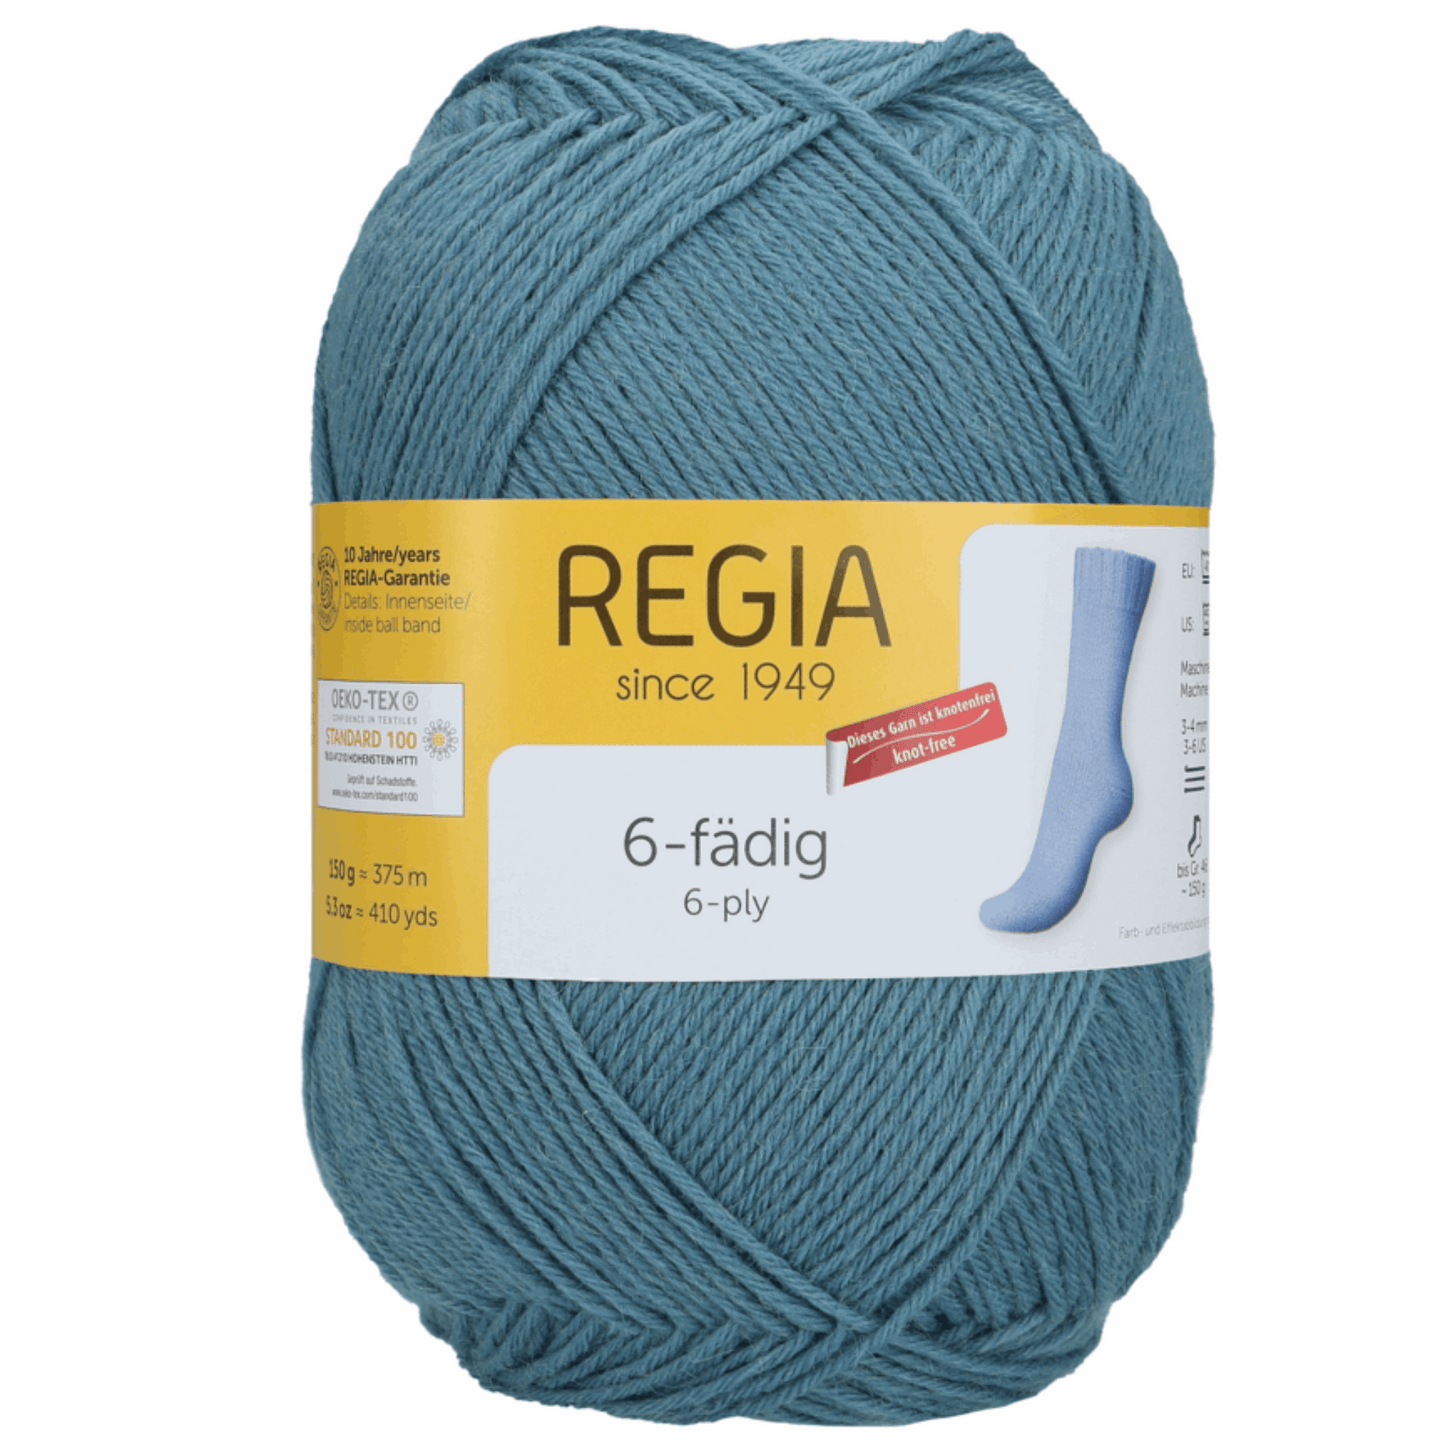 Regia 6f. 150 g, 90275, Farbe 1062, rauchblau